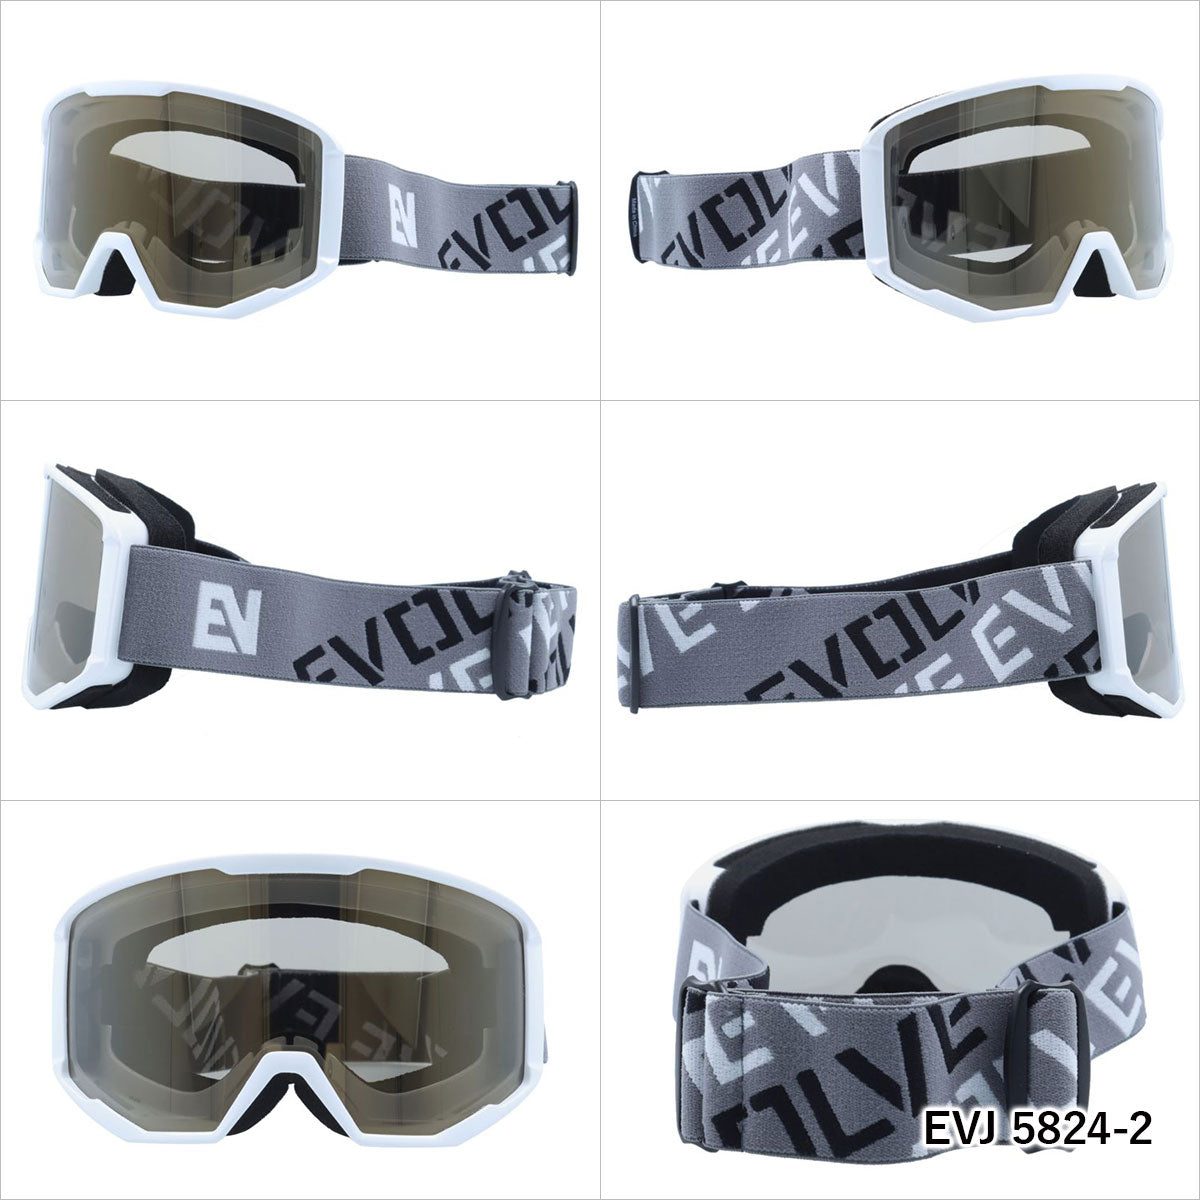 キッズ ジュニア用 イヴァルヴ ゴーグル ミラーレンズ アジアンフィット EVOLVE EVJ 5824 男の子 女の子 スキー スノーボード ウィンタースポーツ 平面レンズ ダブルレンズ 眼鏡対応